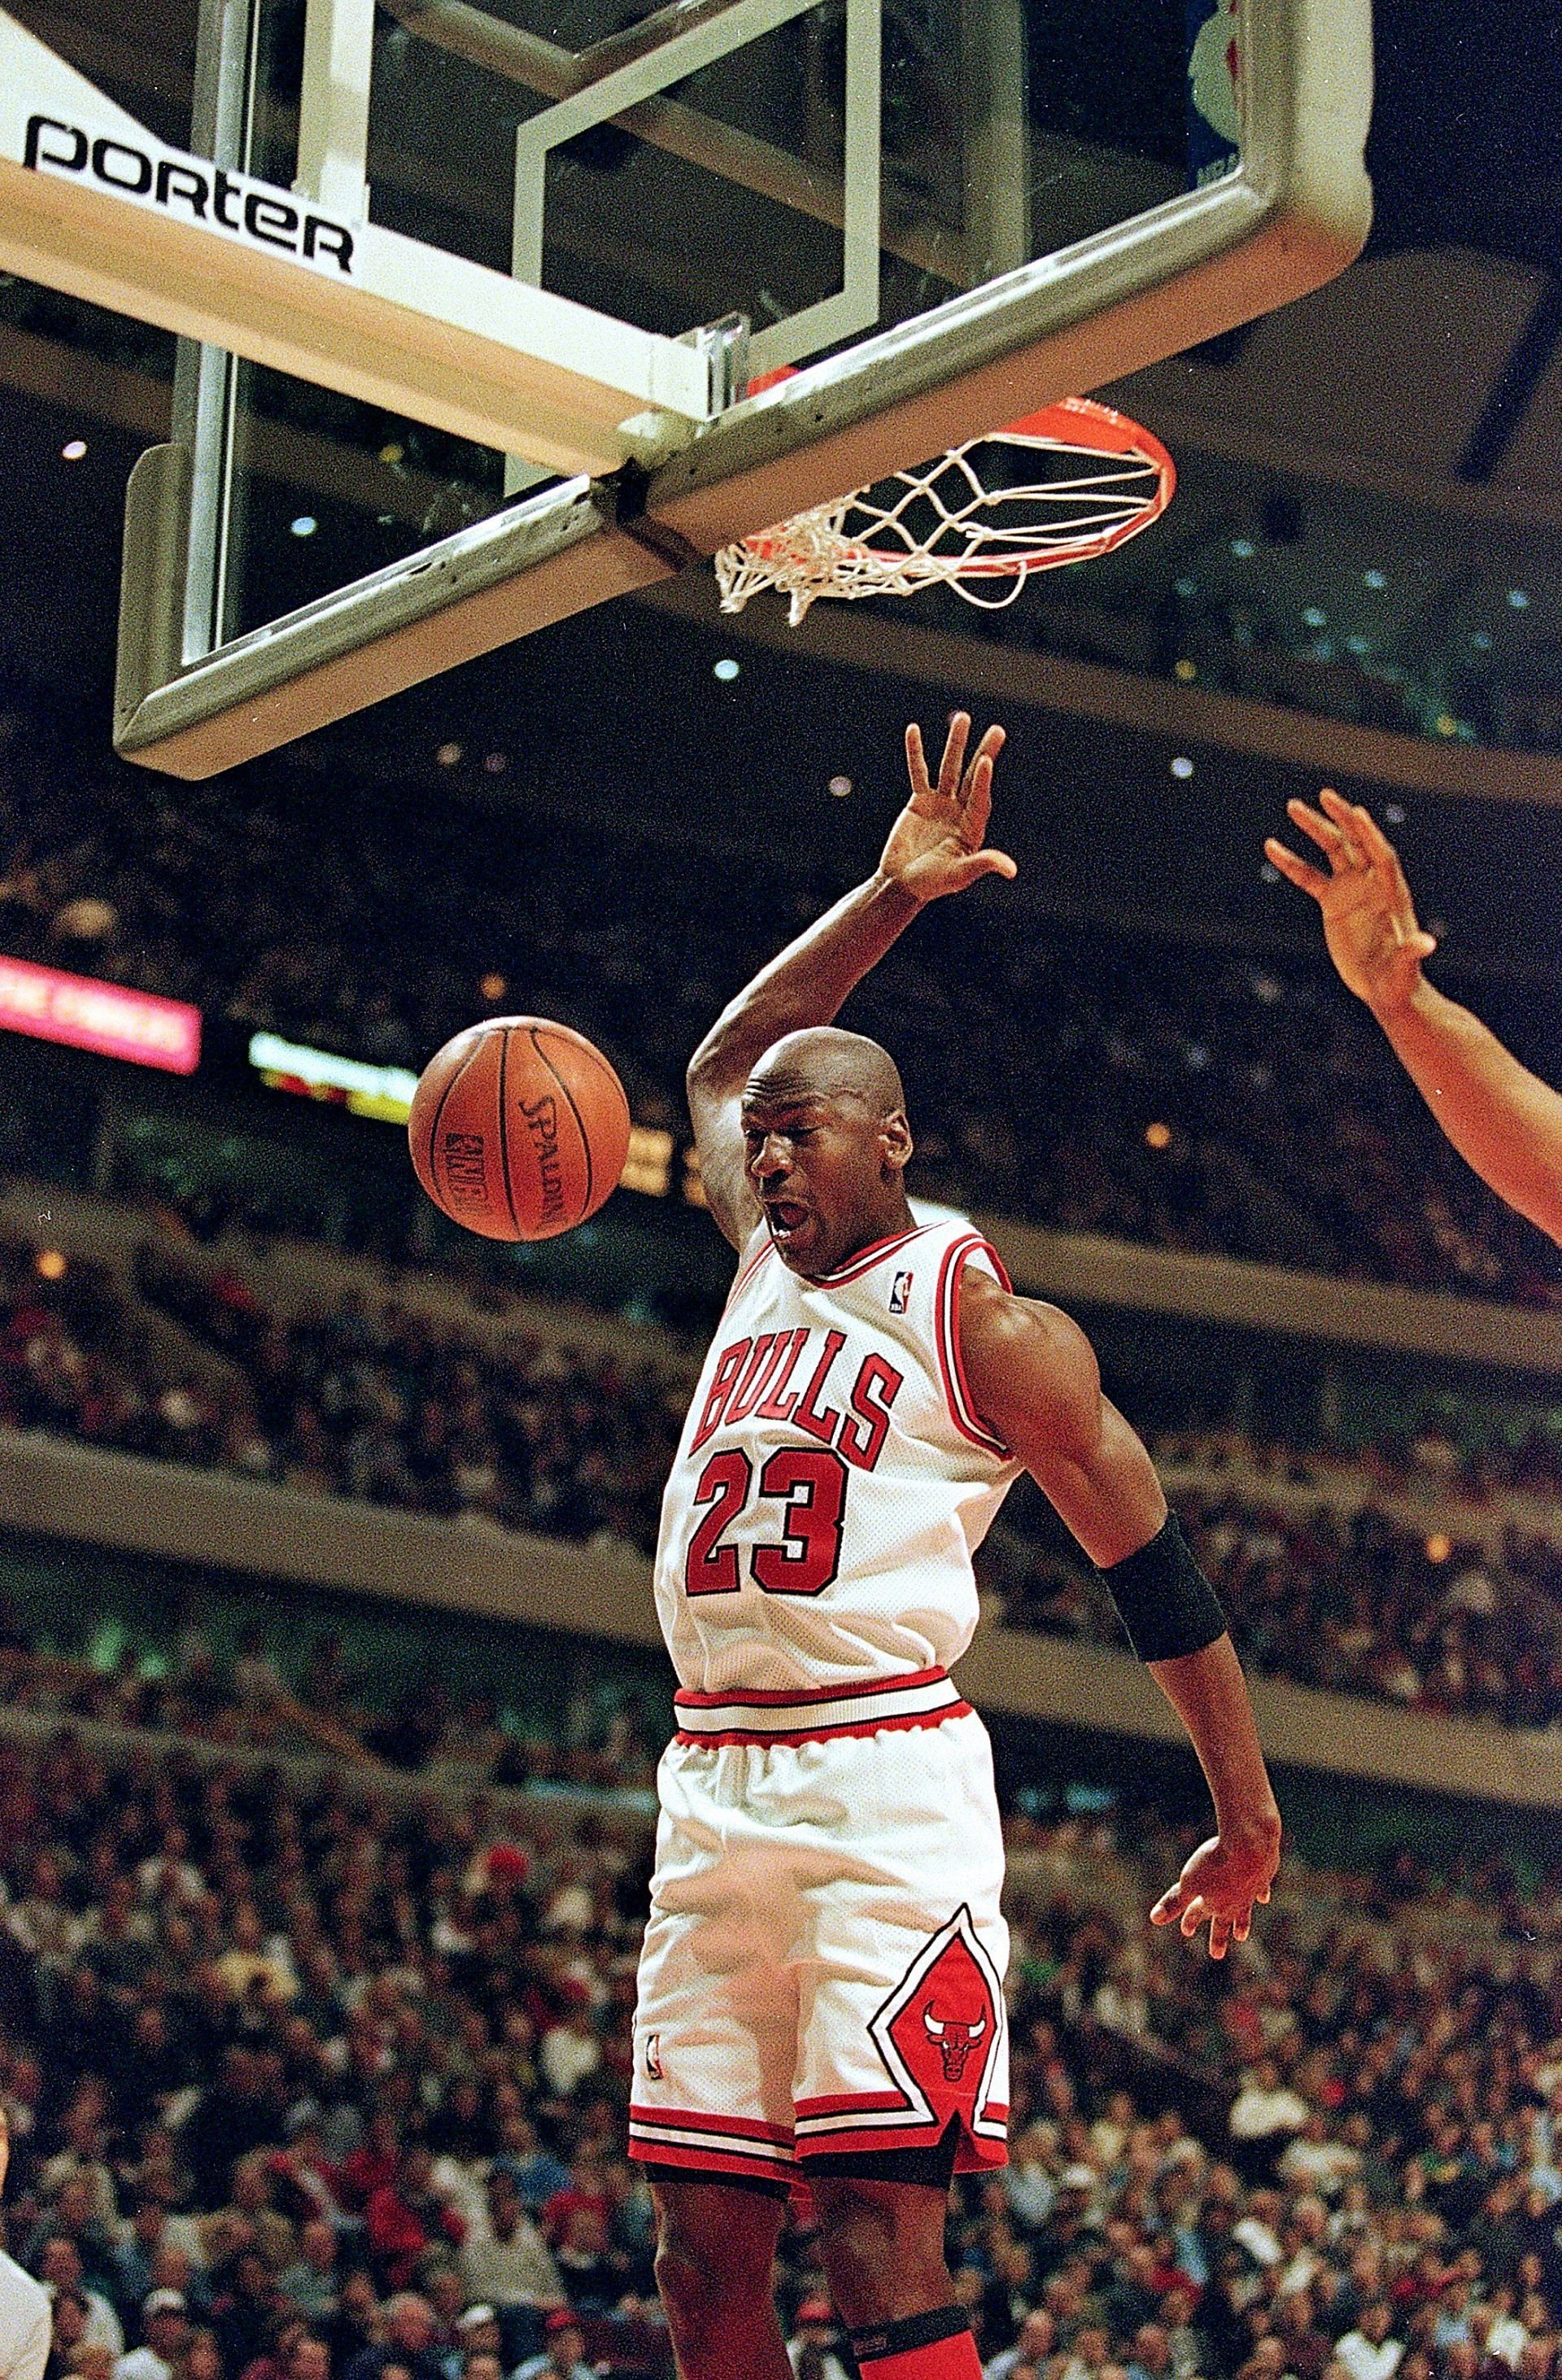 Michael Jordan, six time NBA Champion